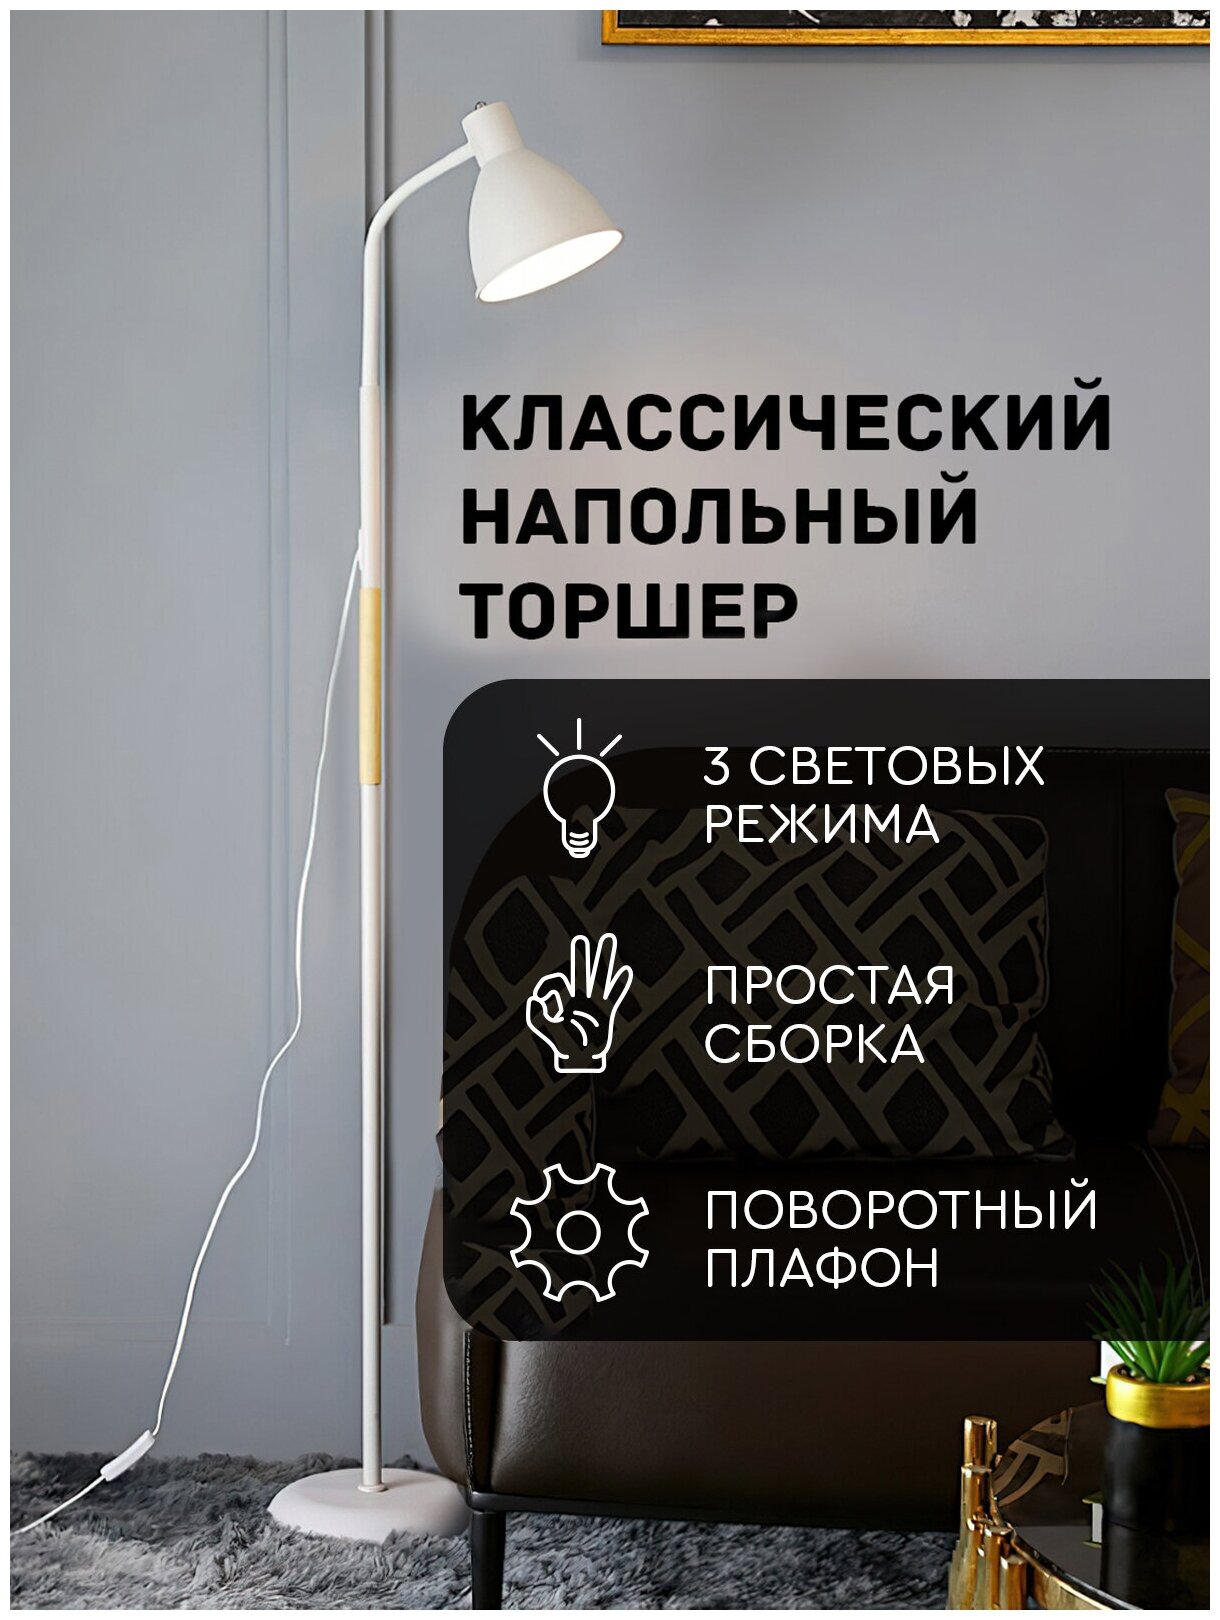 Светильник Hans&Helma торшер напольный лампа лофт стиль. Выключатель на проводе.